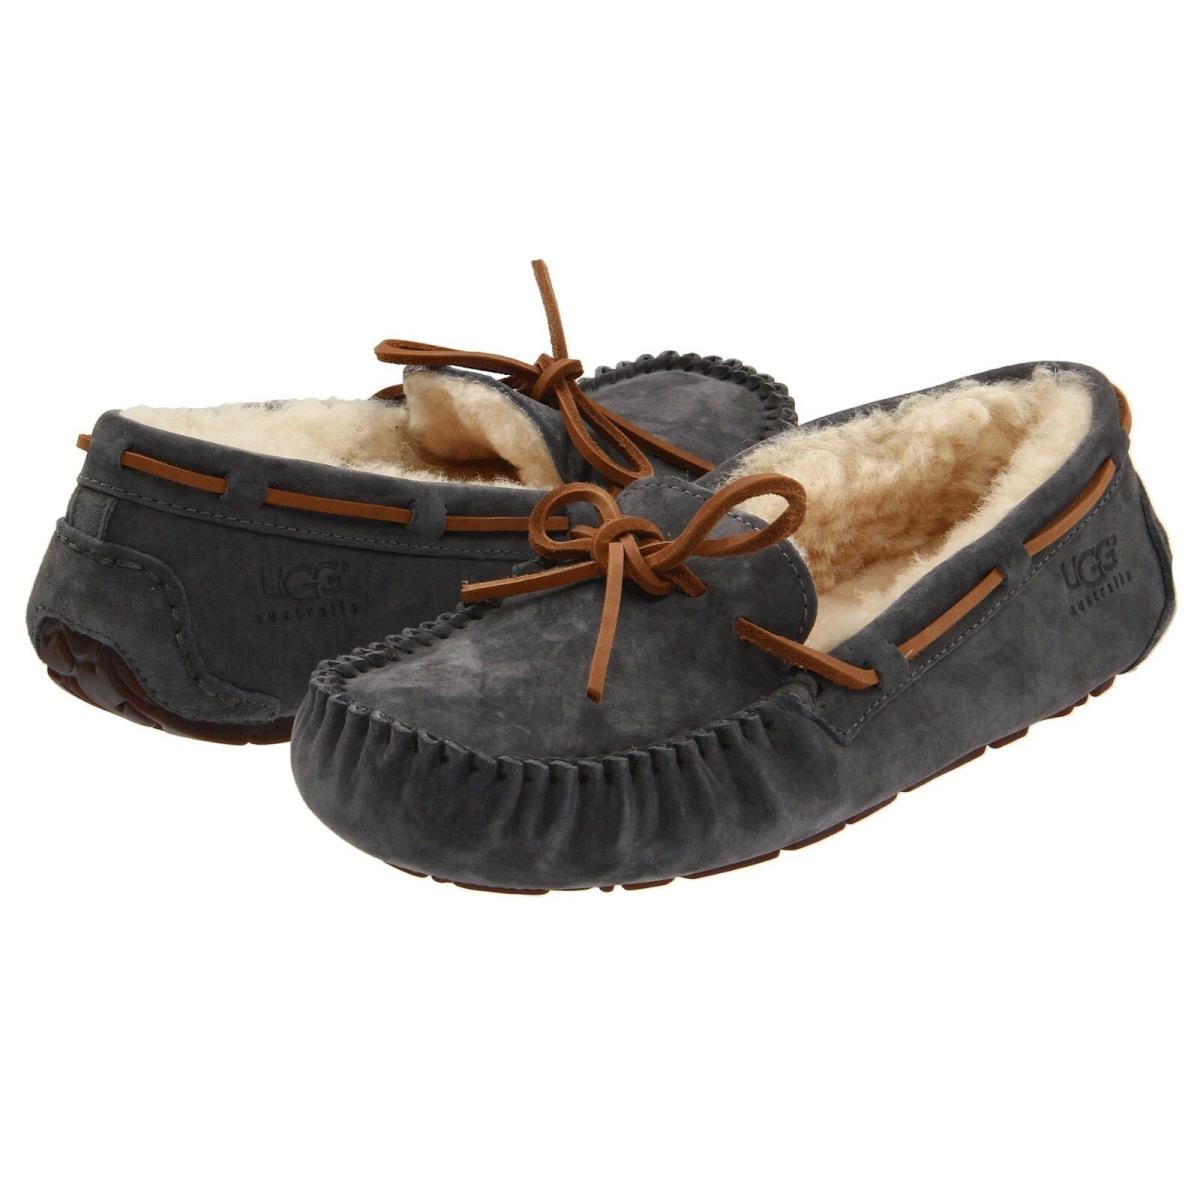 Women`s Shoes Ugg Dakota Moccasin Indoor/outdoor Slippers 5612 Pewter